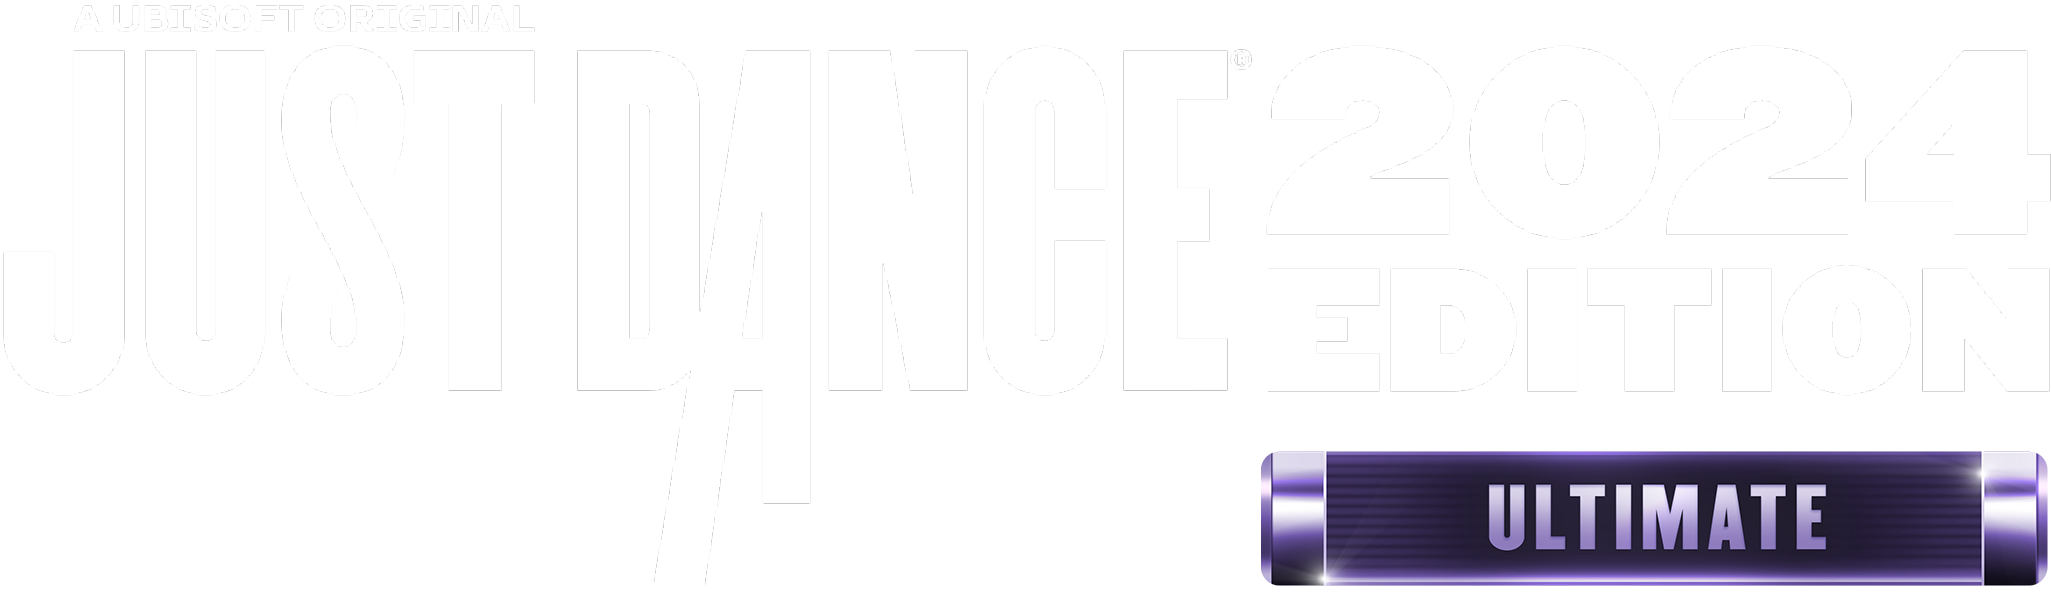 Just Dance 2024 EU PS5 CD Key